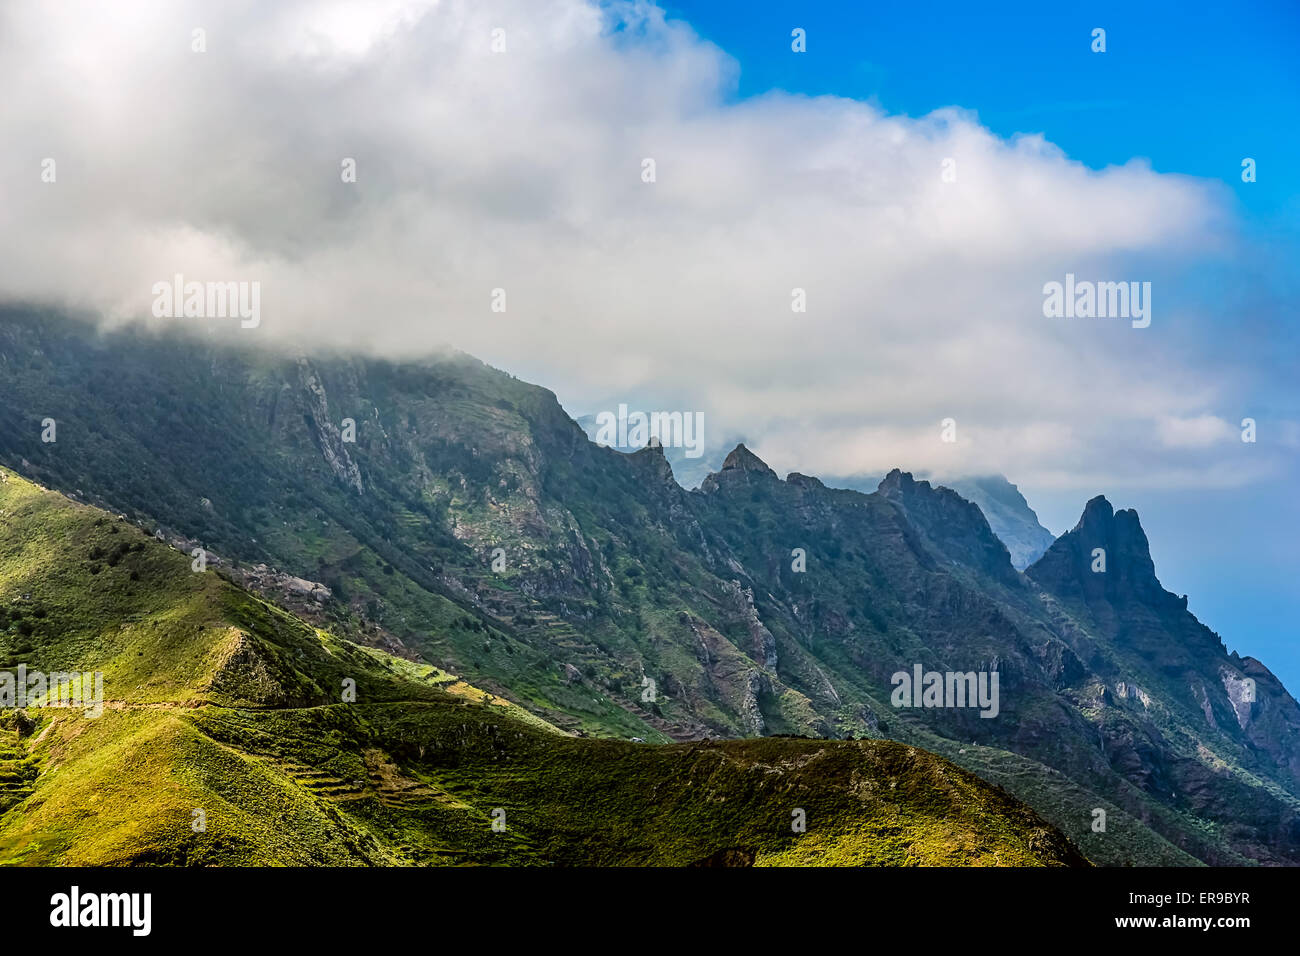 Les roches vertes avec des nuages sur ciel bleu, l'île de Tenerife en paysage Espagne Banque D'Images